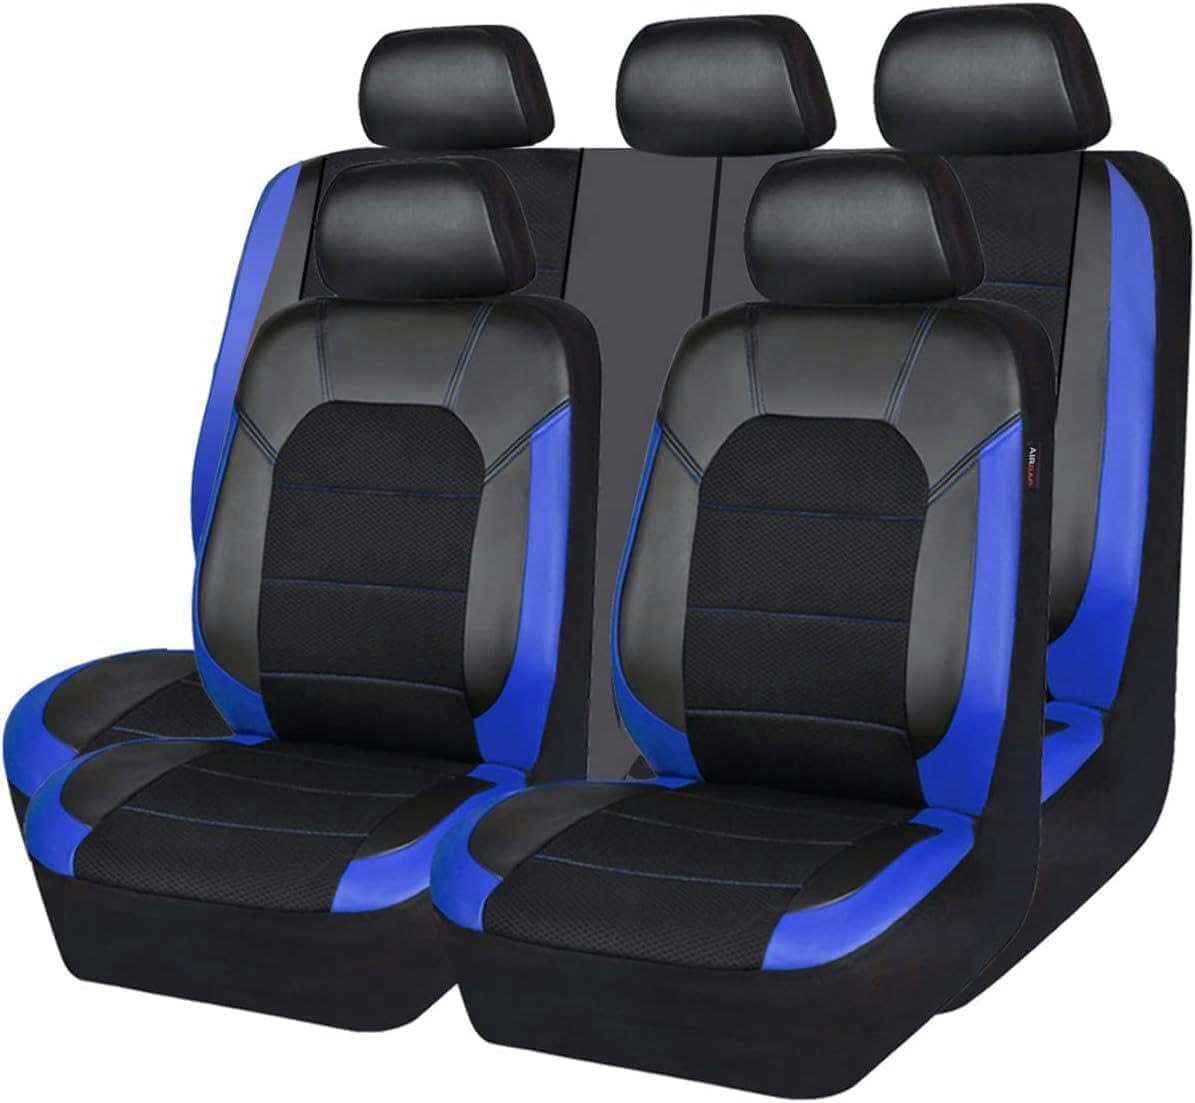 HERTC Auto-Sitzbezug für Seat Ateca, Allwetter rutschfest Wasserdicht Atmungsaktiv Schonbezug Set Sitzkissenschutz,Black blue von HERTC